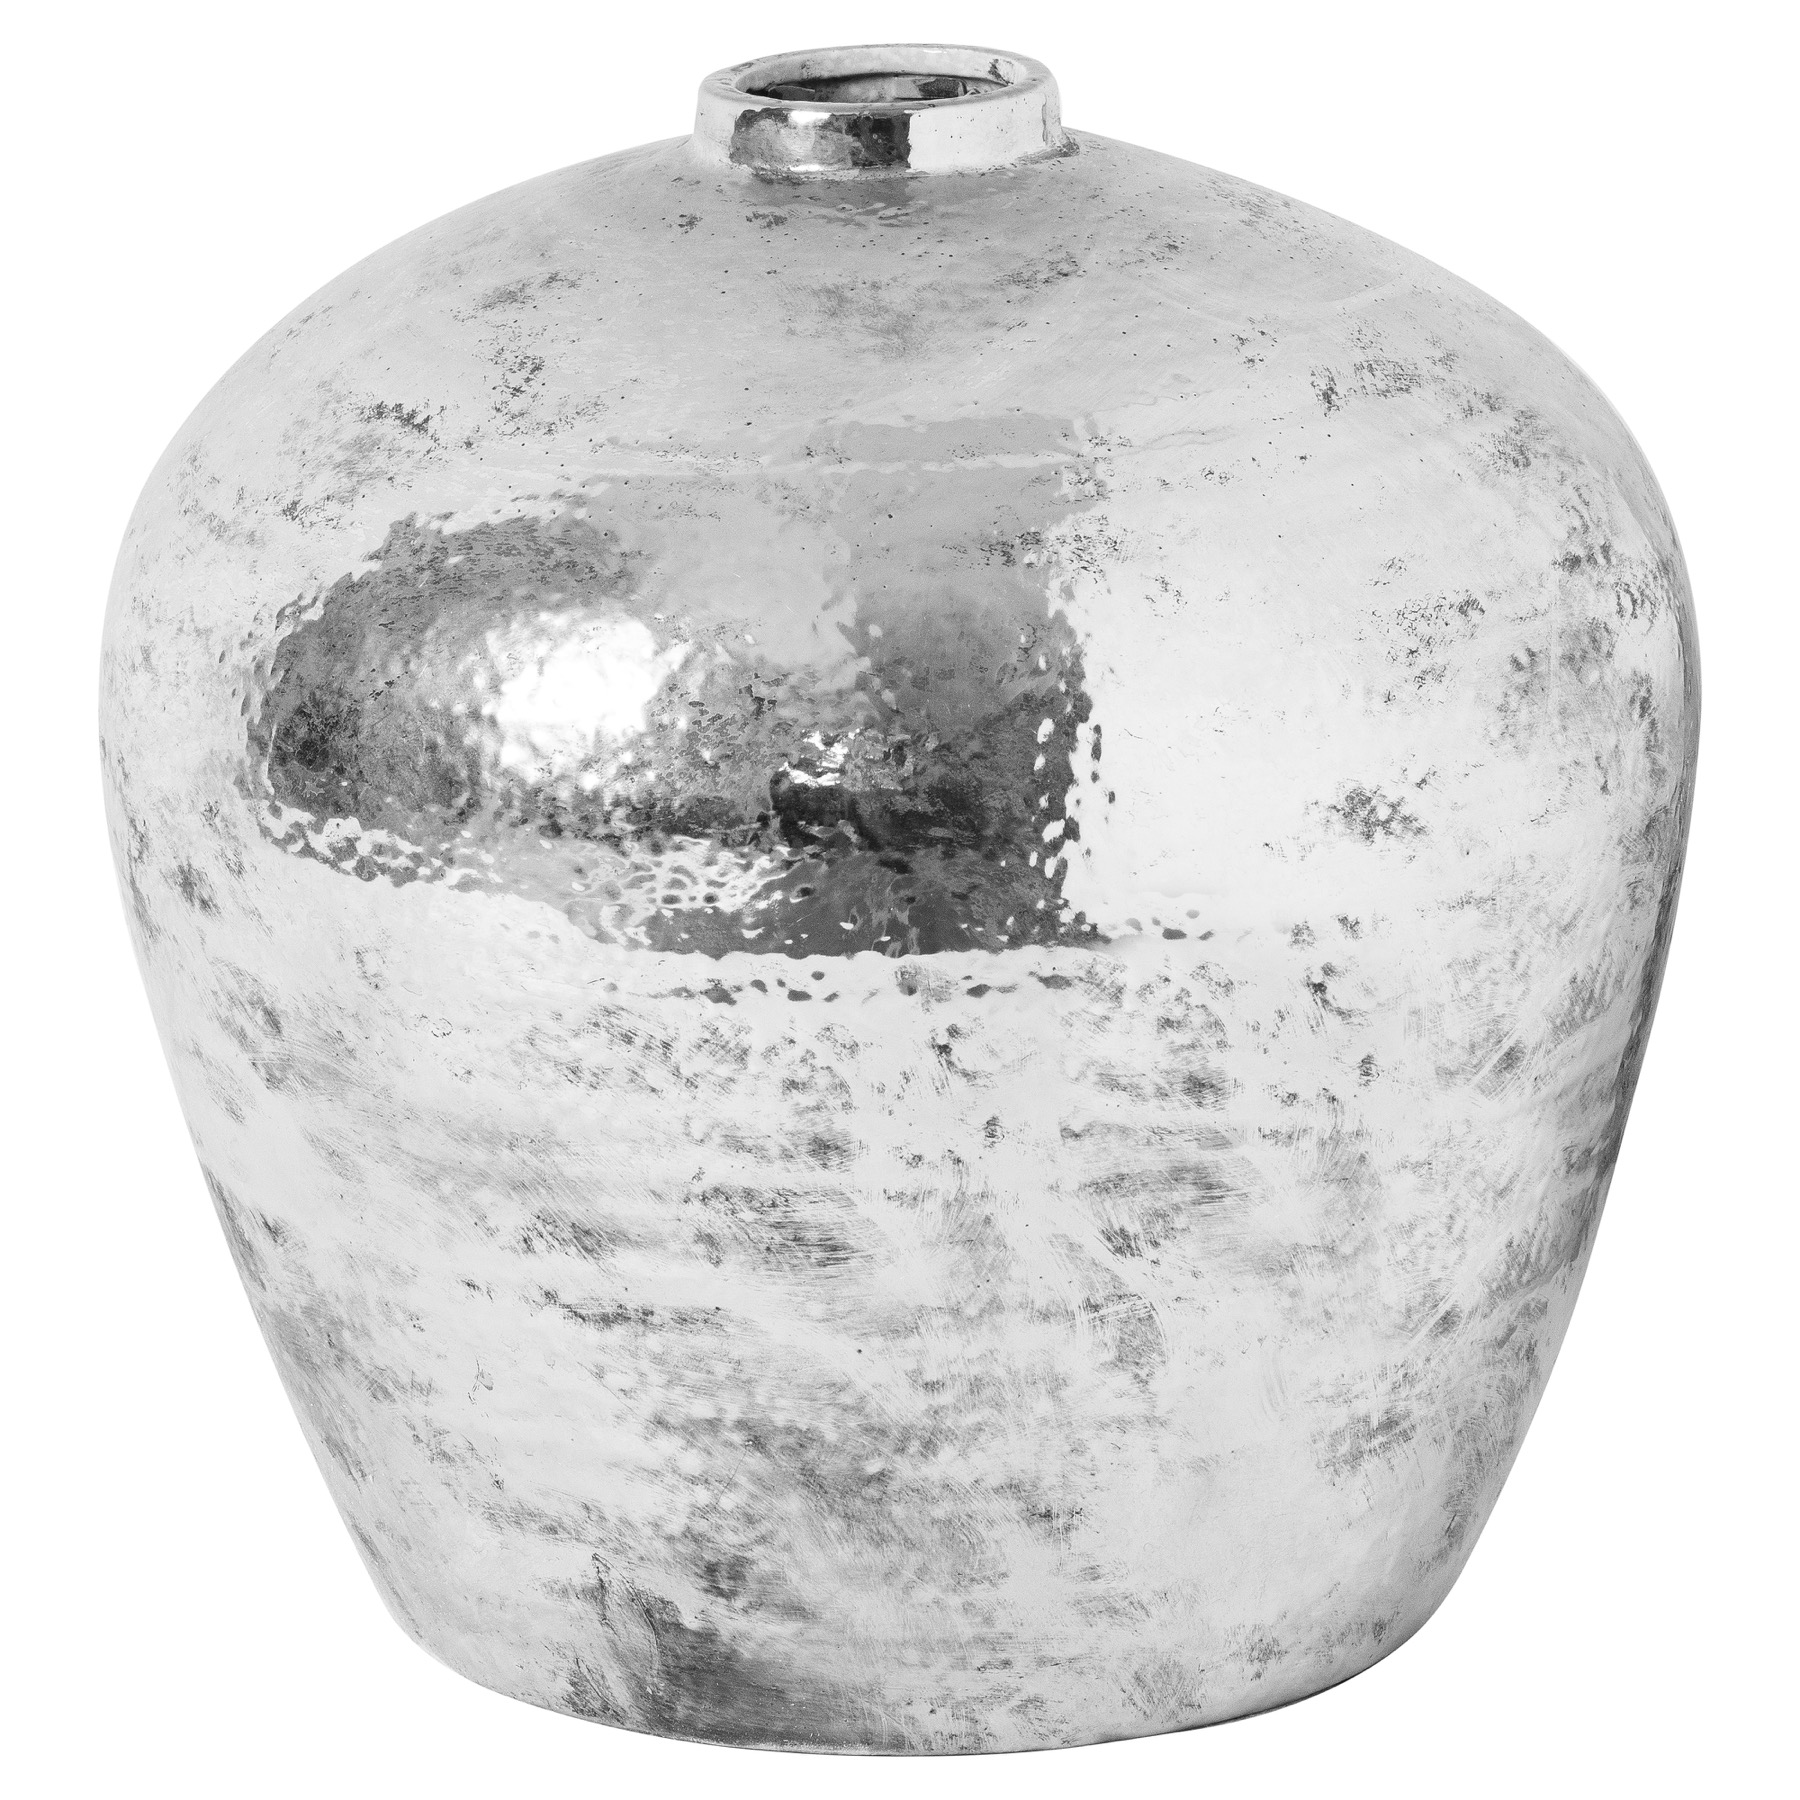 Hammered Silver Astral Vase - Image 1